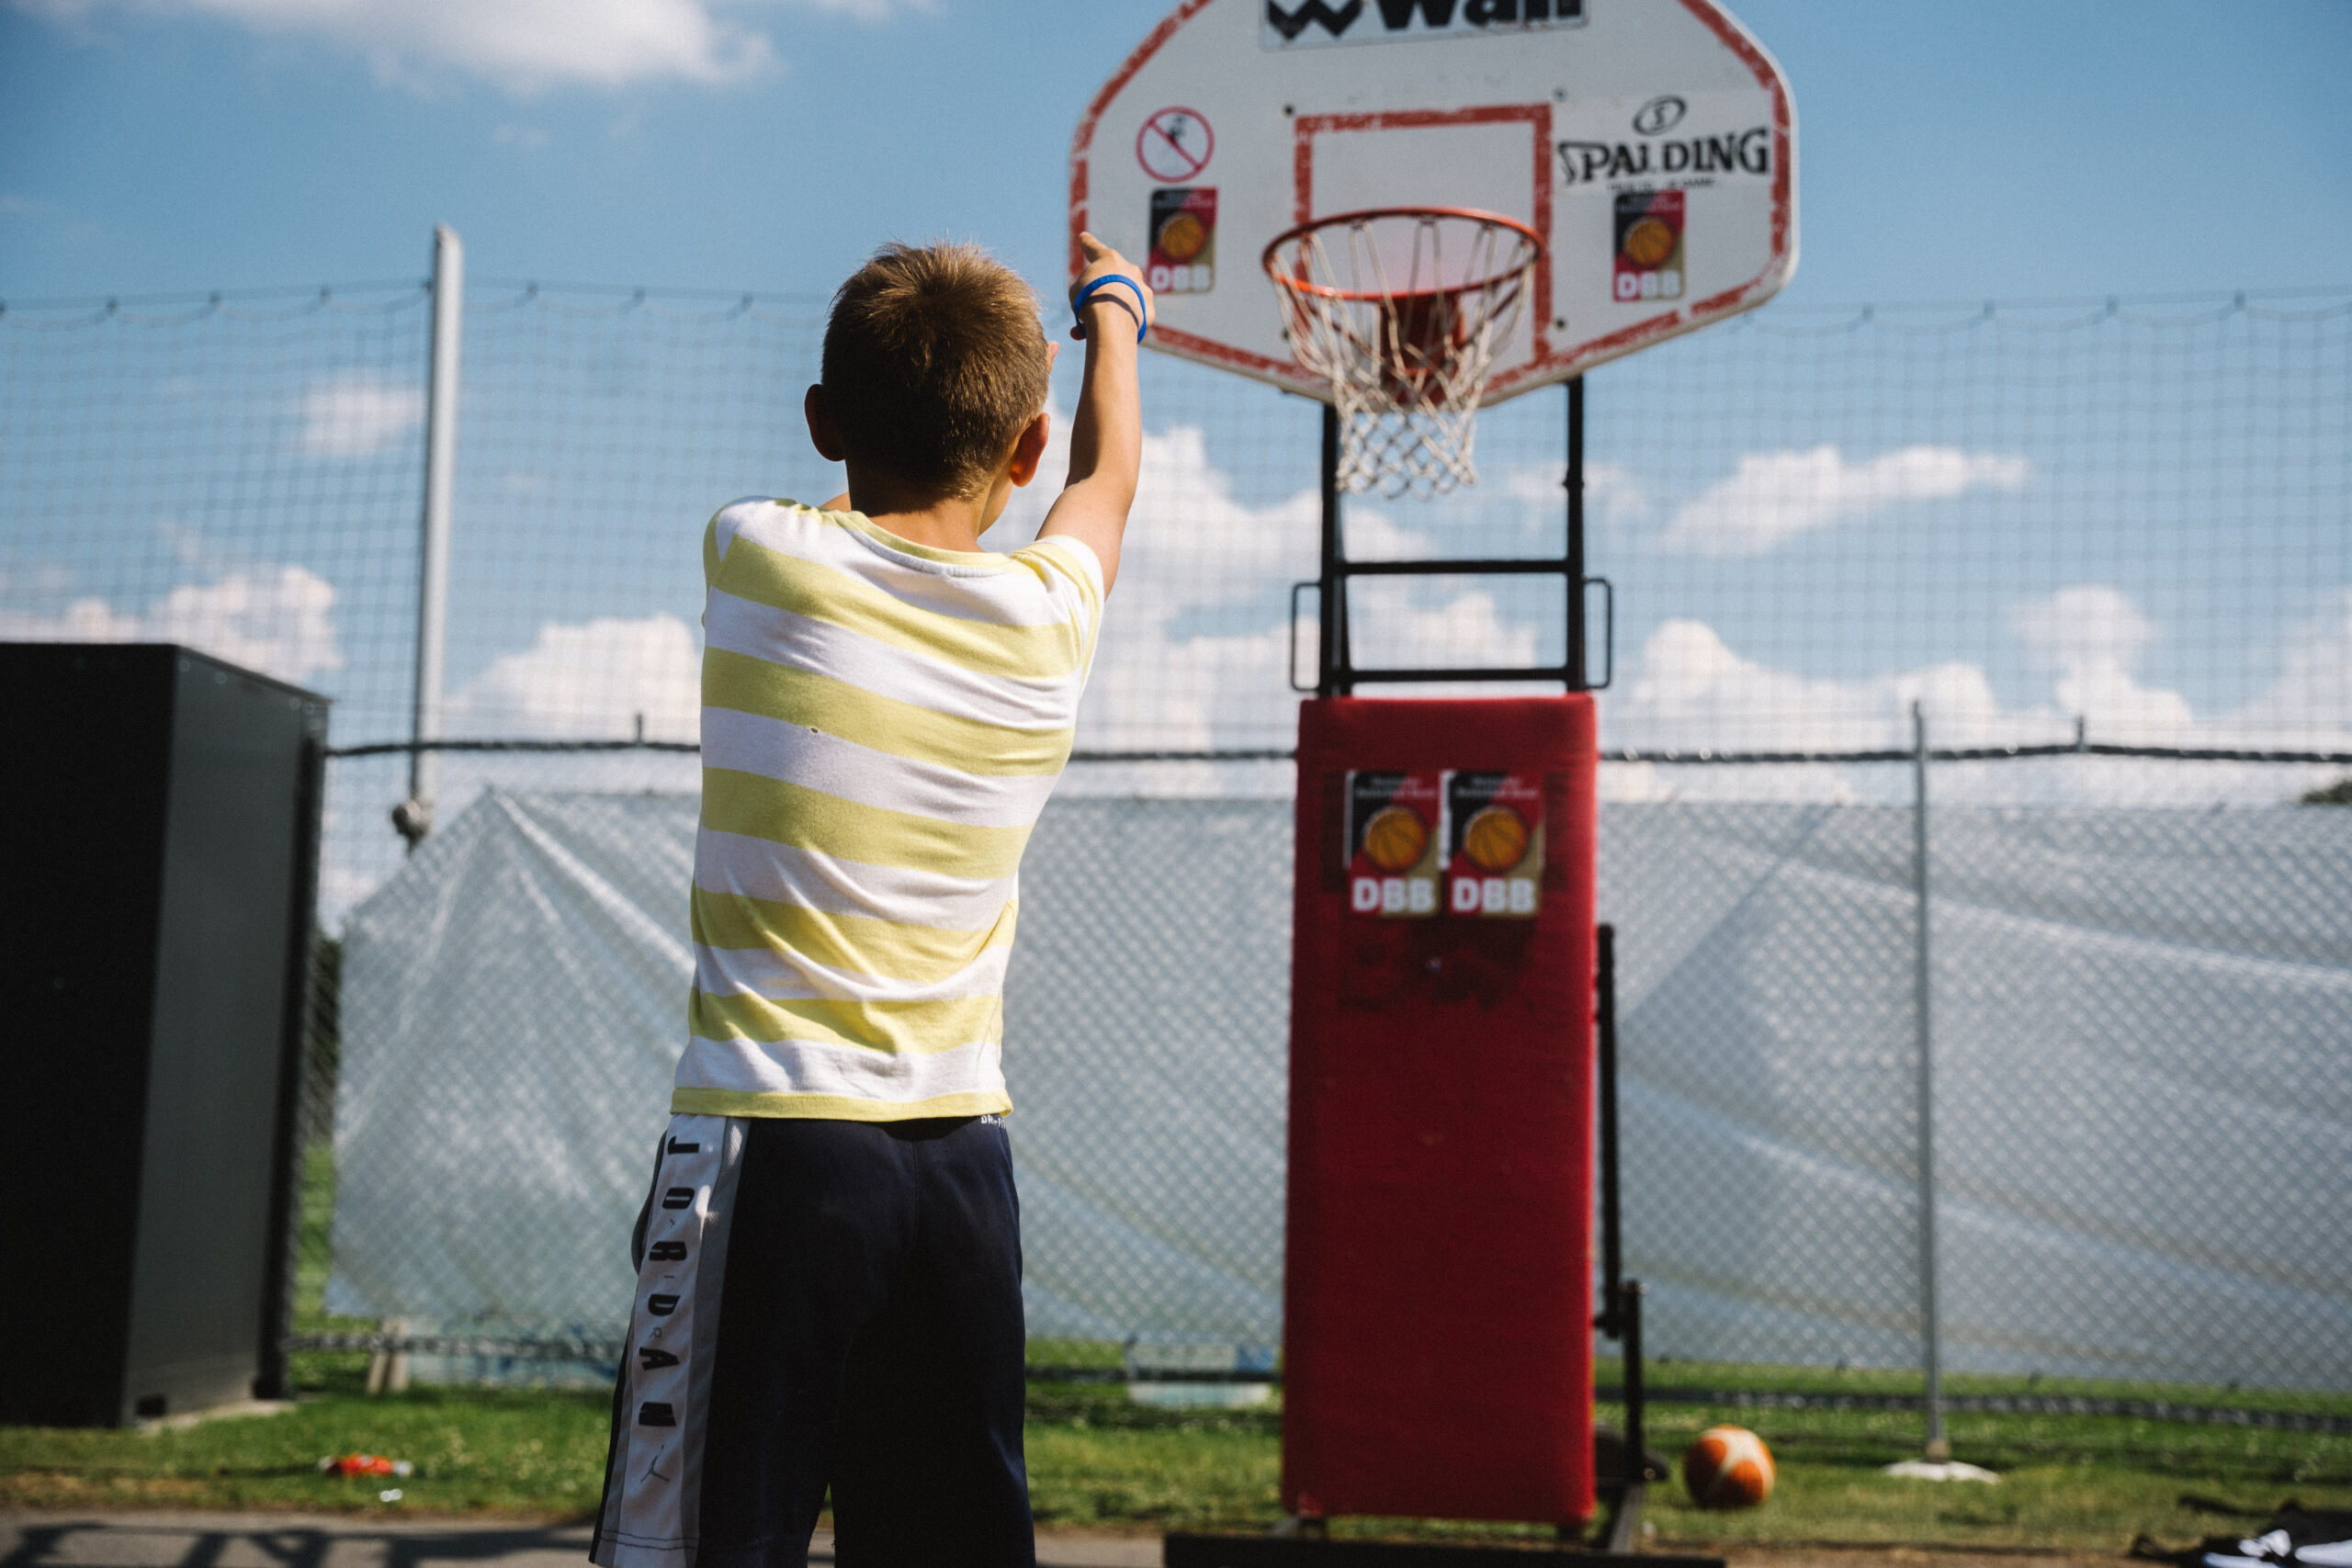 Junge in gestreiftem Shirt wirft auf Basketballkorb